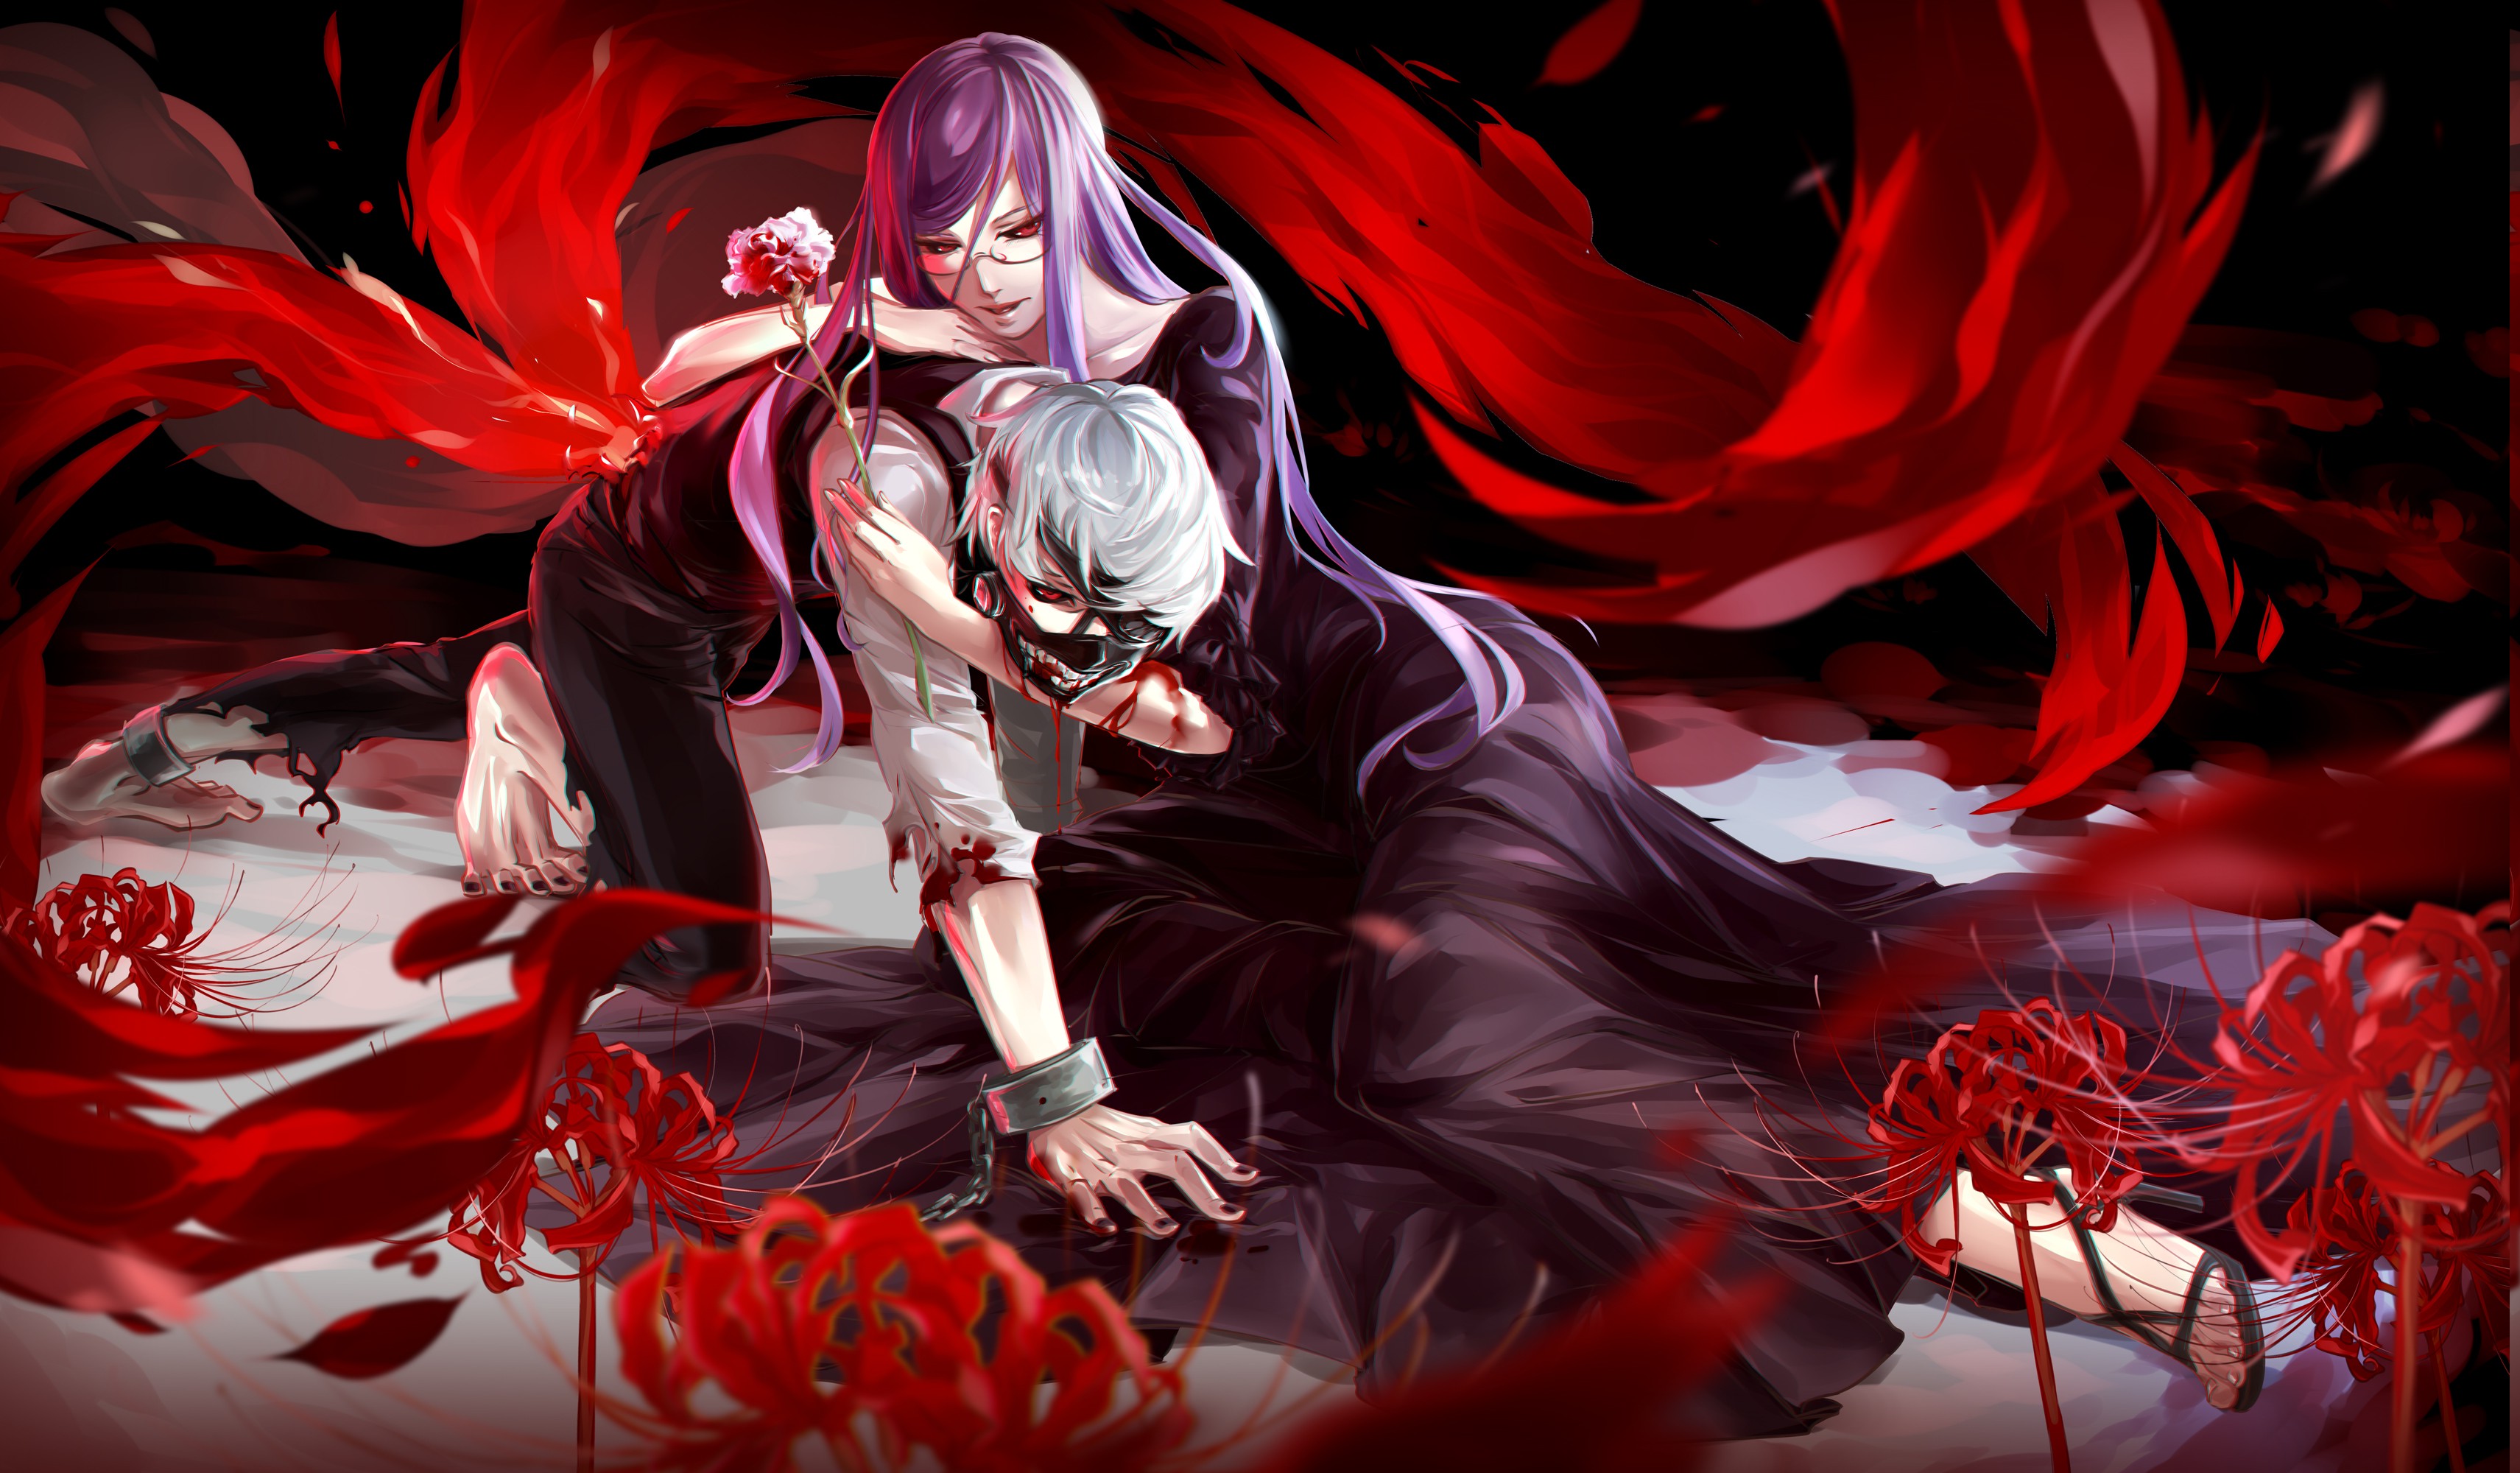 anime wallpaper hd,cg artwork,rosso,anime,personaggio fittizio,demone